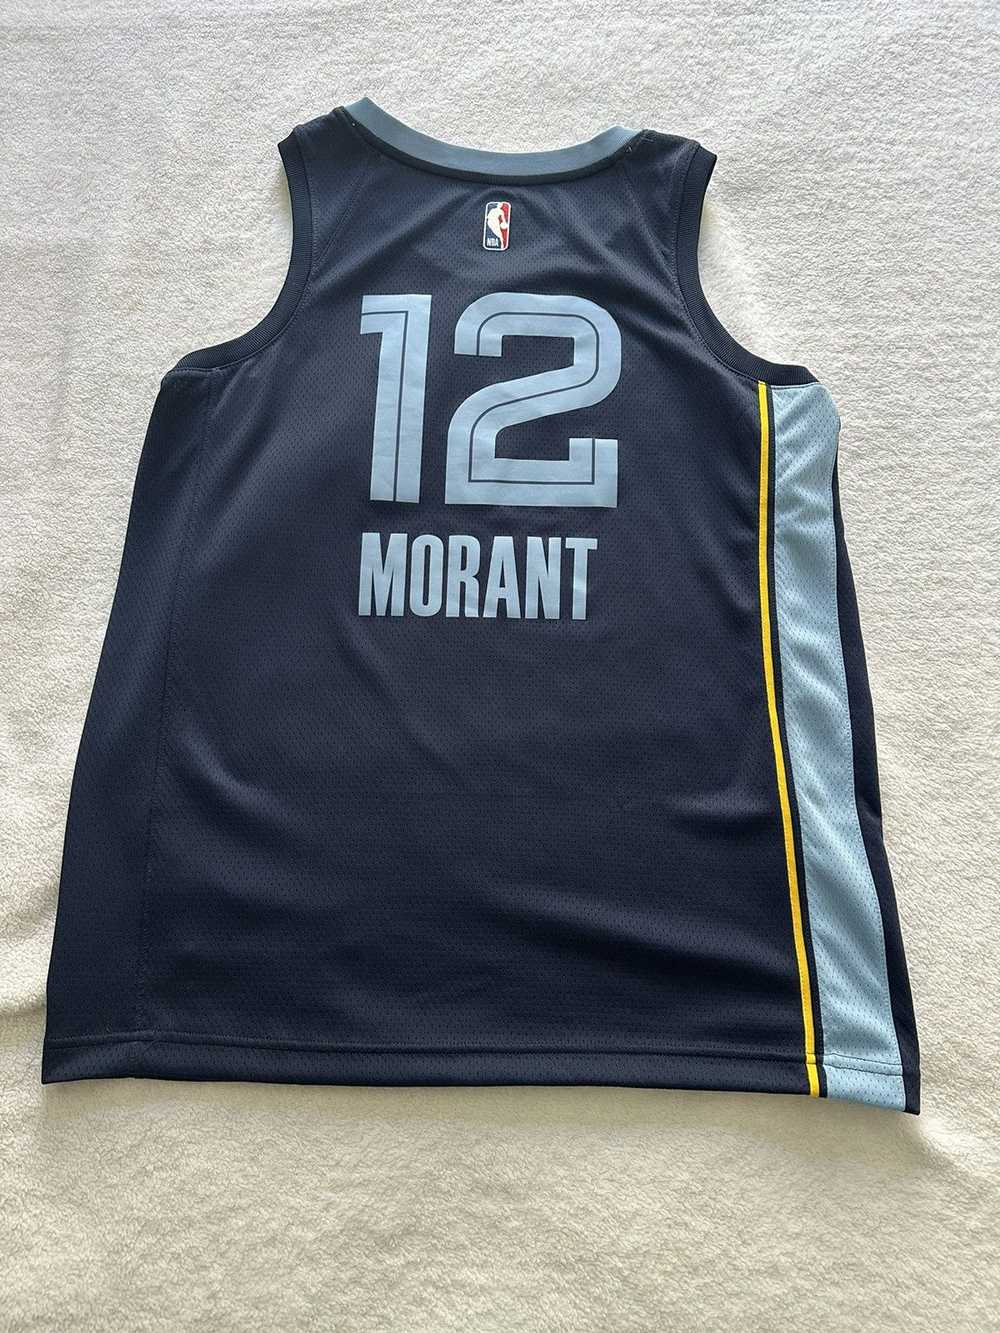 Jersey × NBA × Sportswear Ja Morant Grizzlies Jer… - image 2